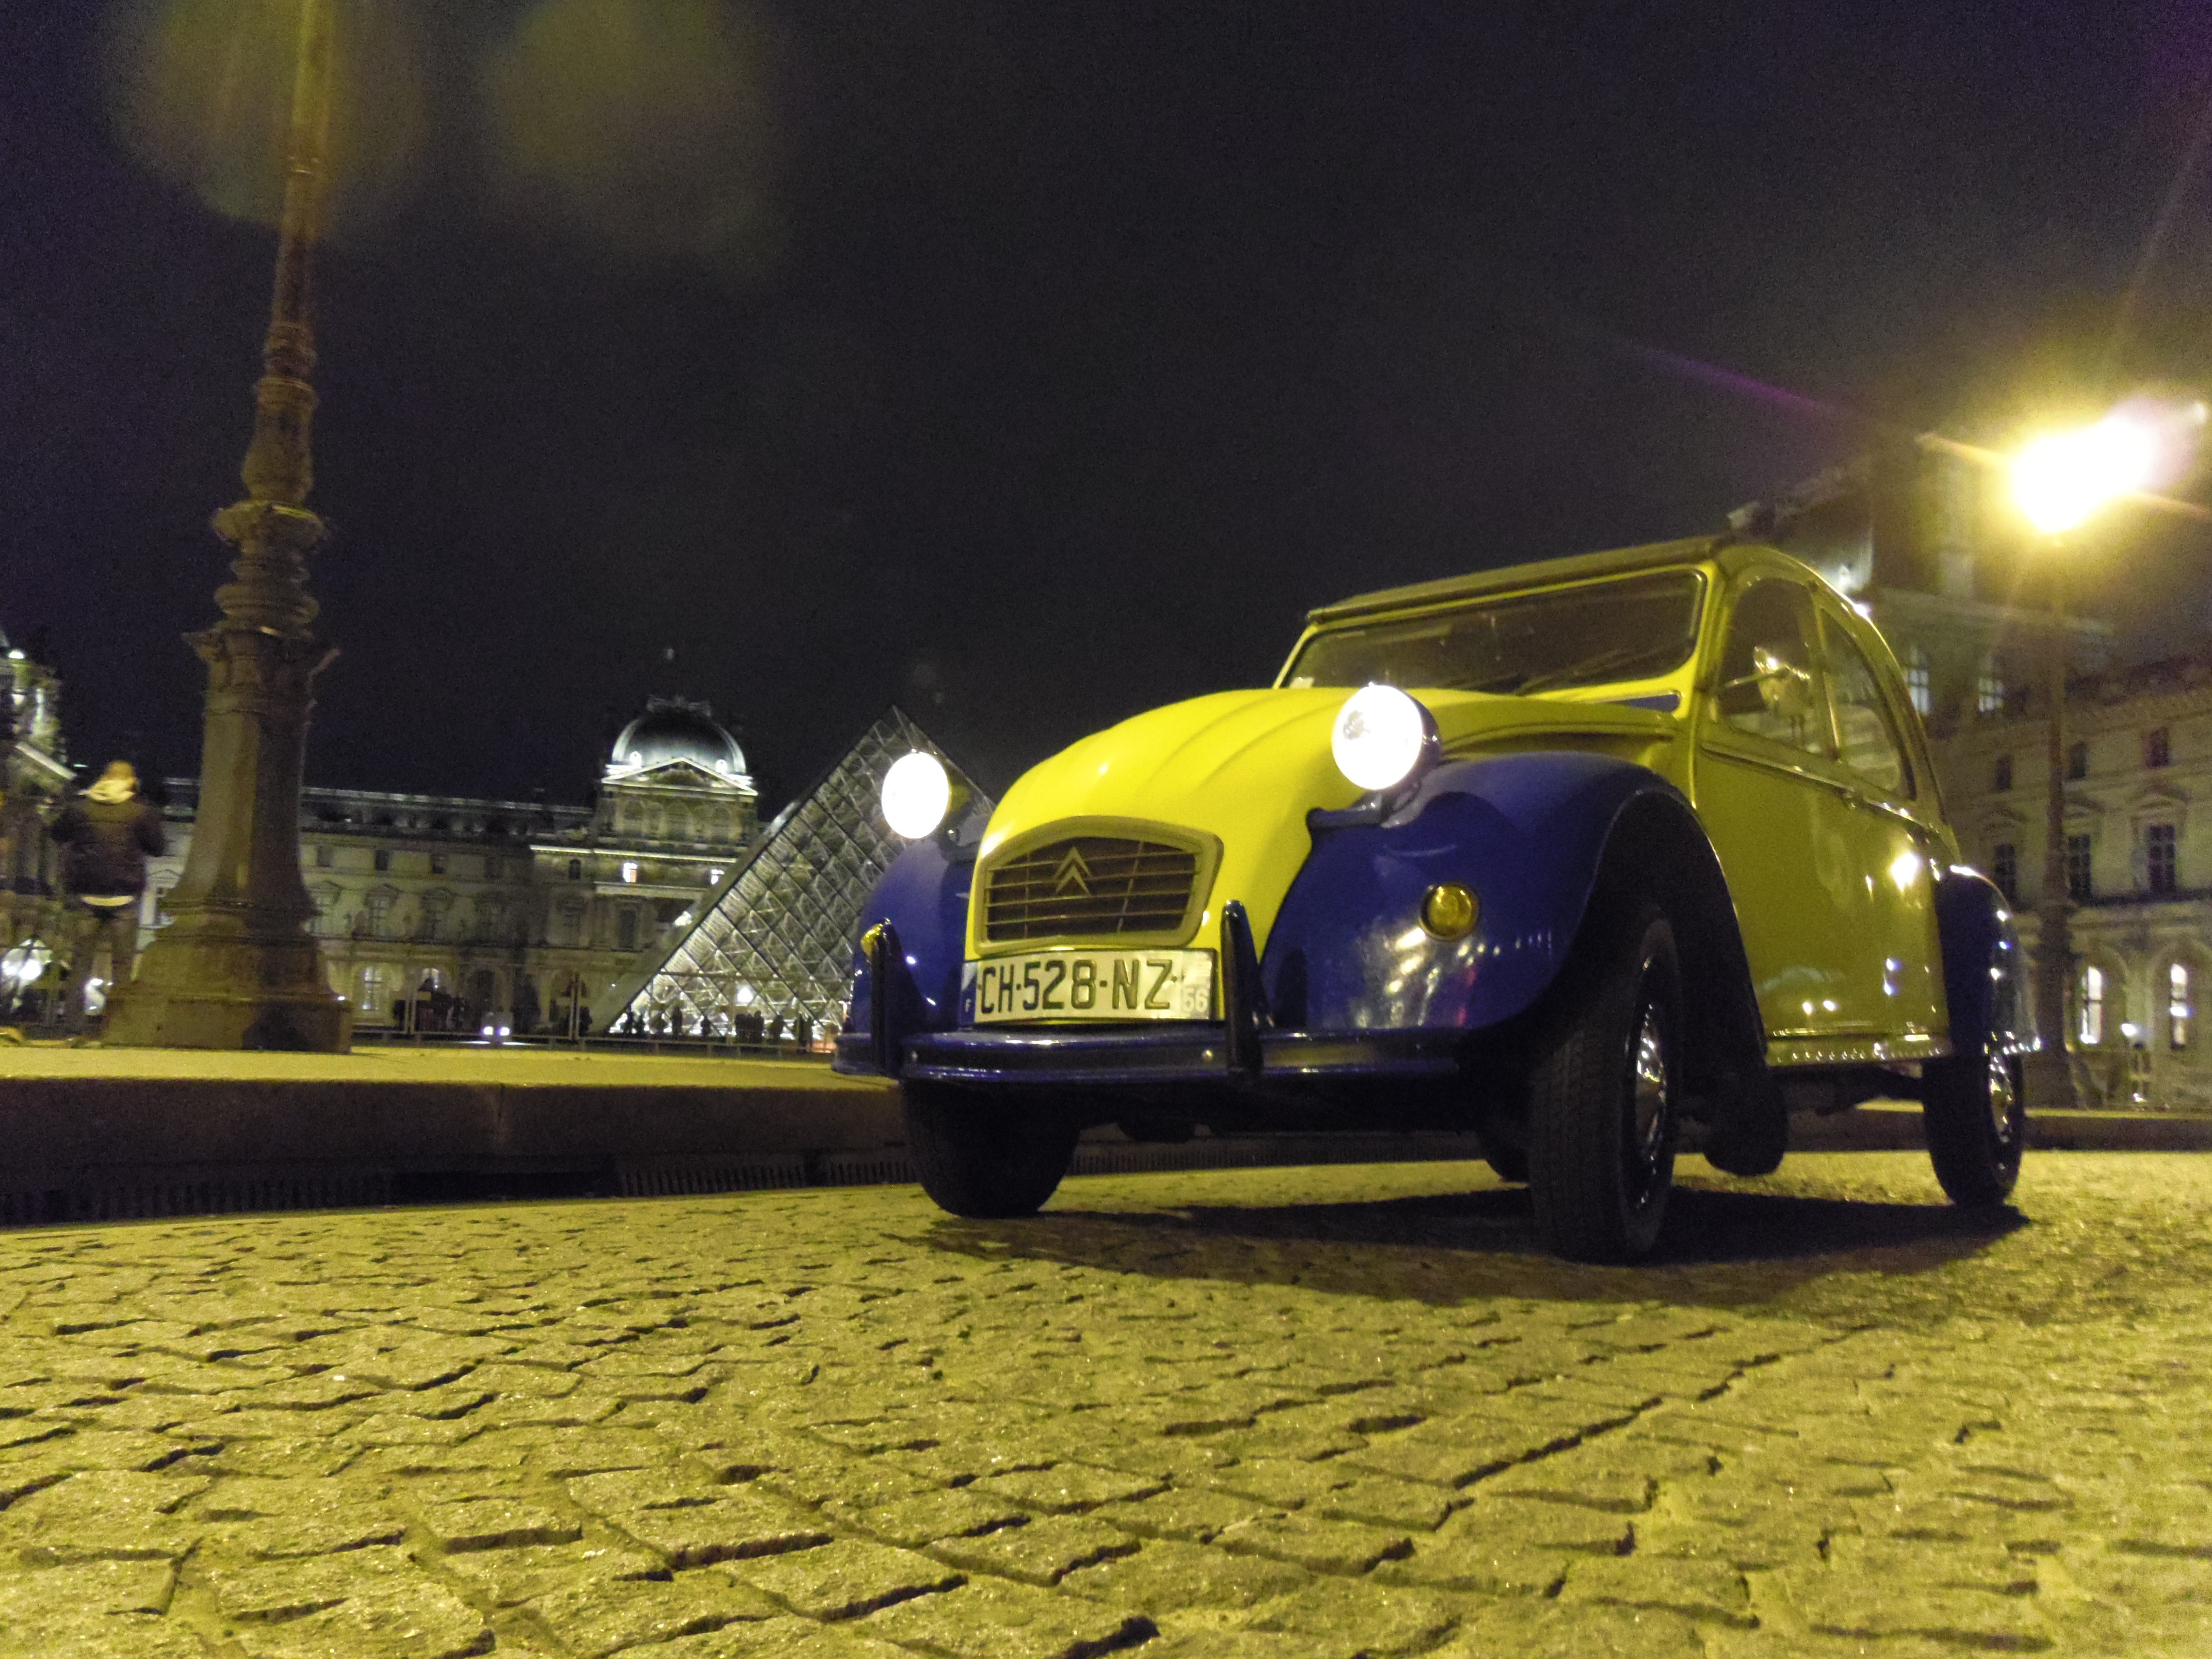 2CV Paris Tour - Paris By Night and Le Louvre